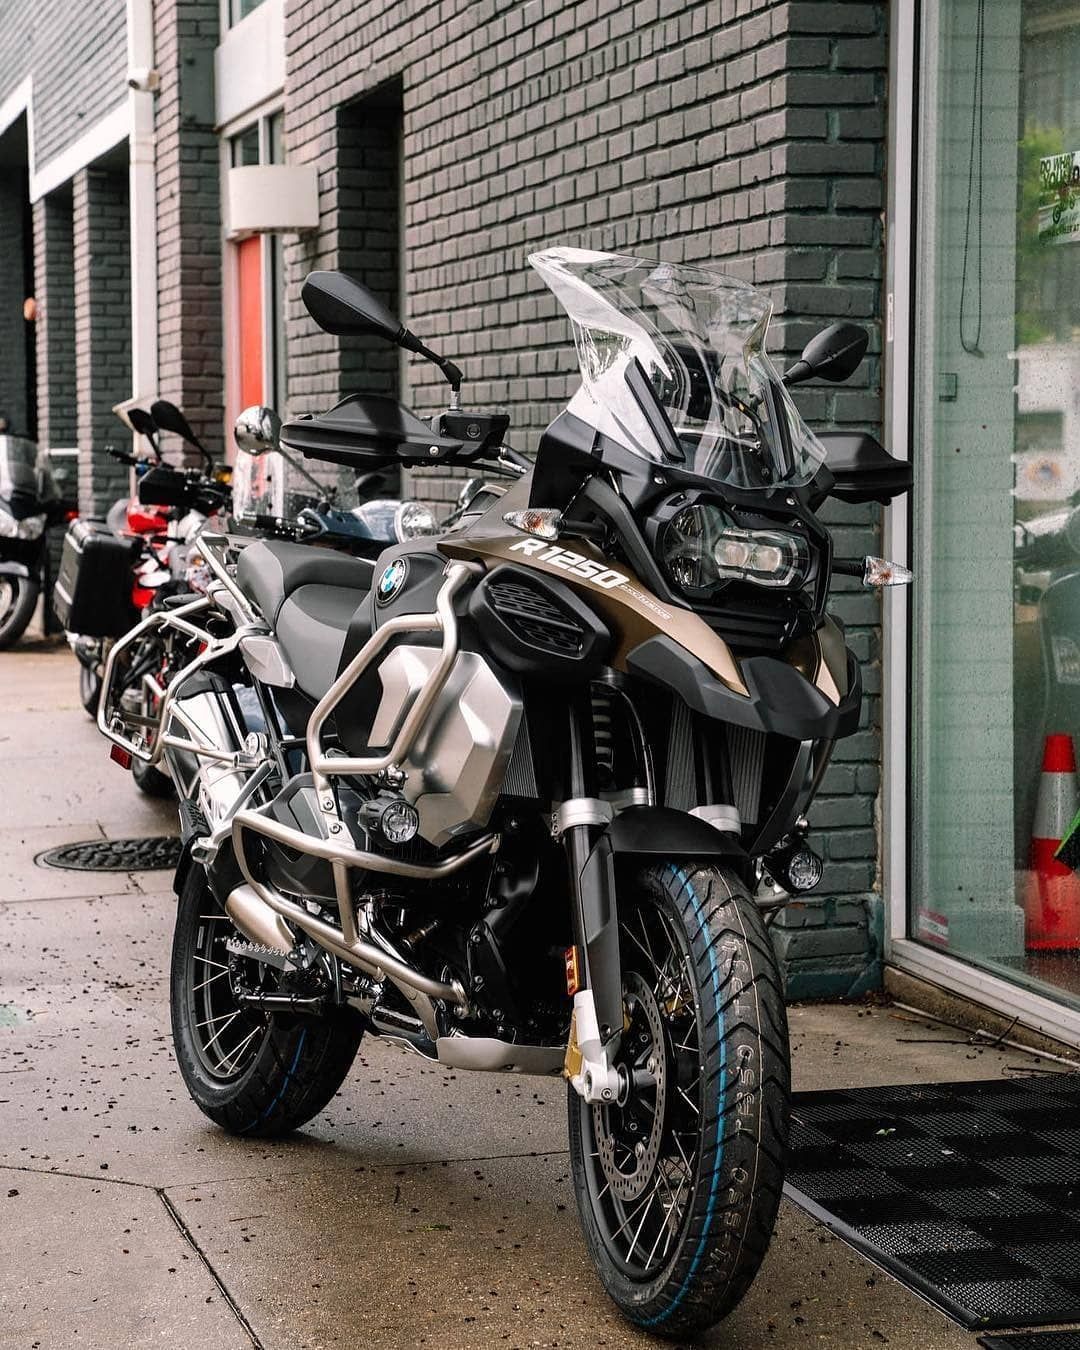 Bmw GS1250 2019 ideas. bmw, bmw motorcycles, adventure bike